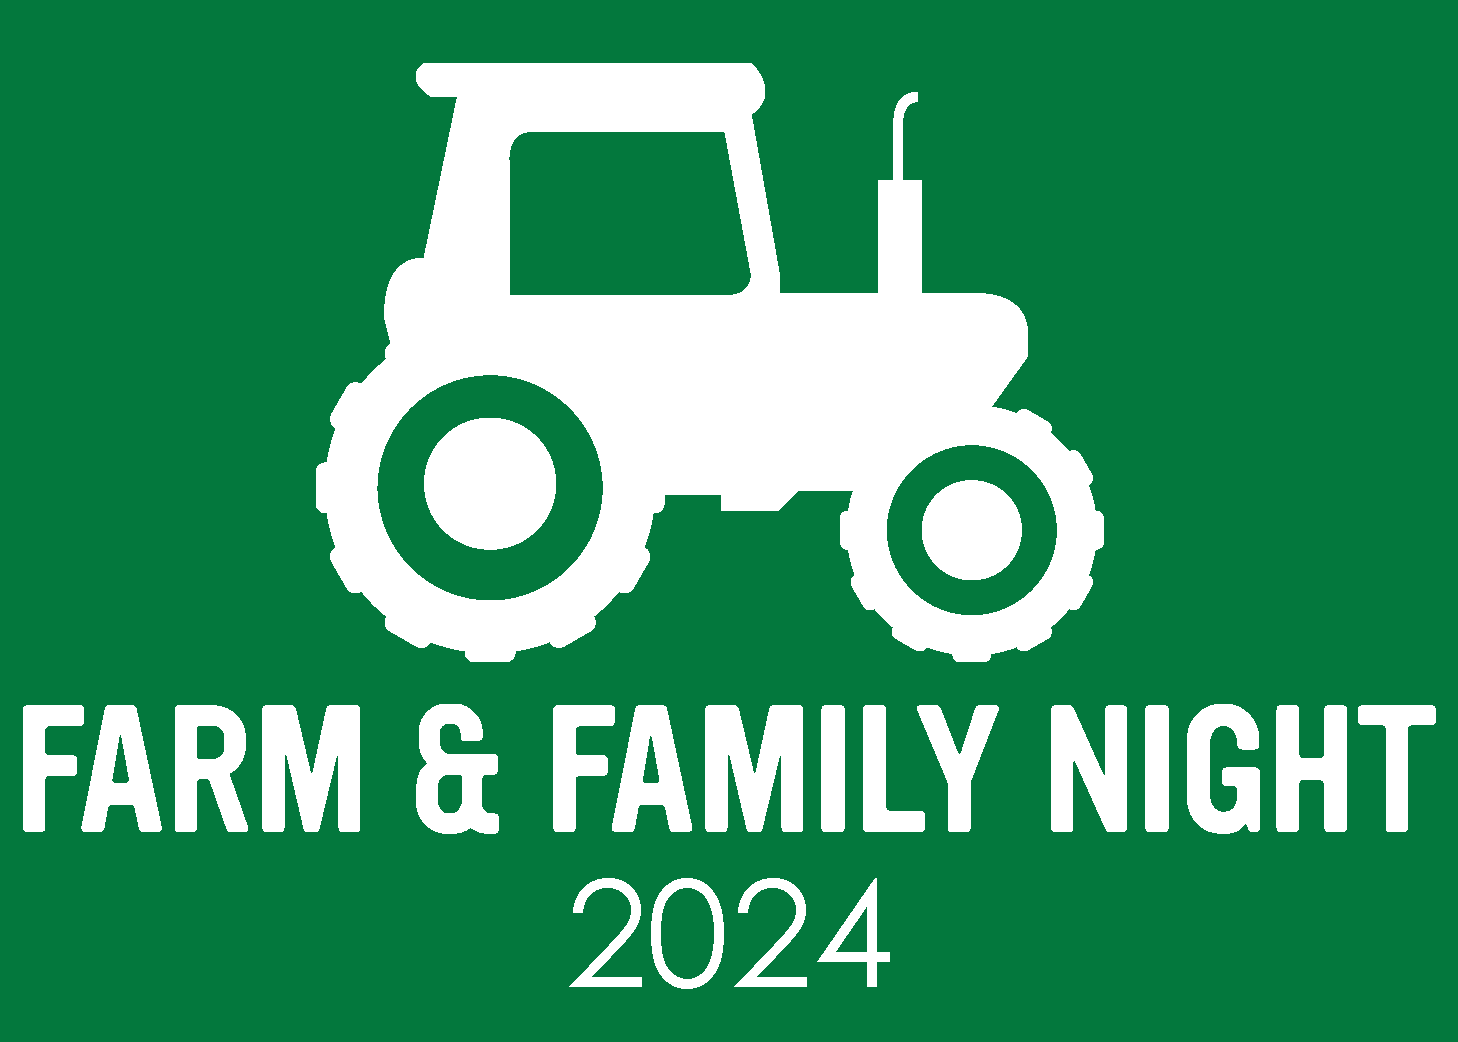 Farm & Family Night 2024